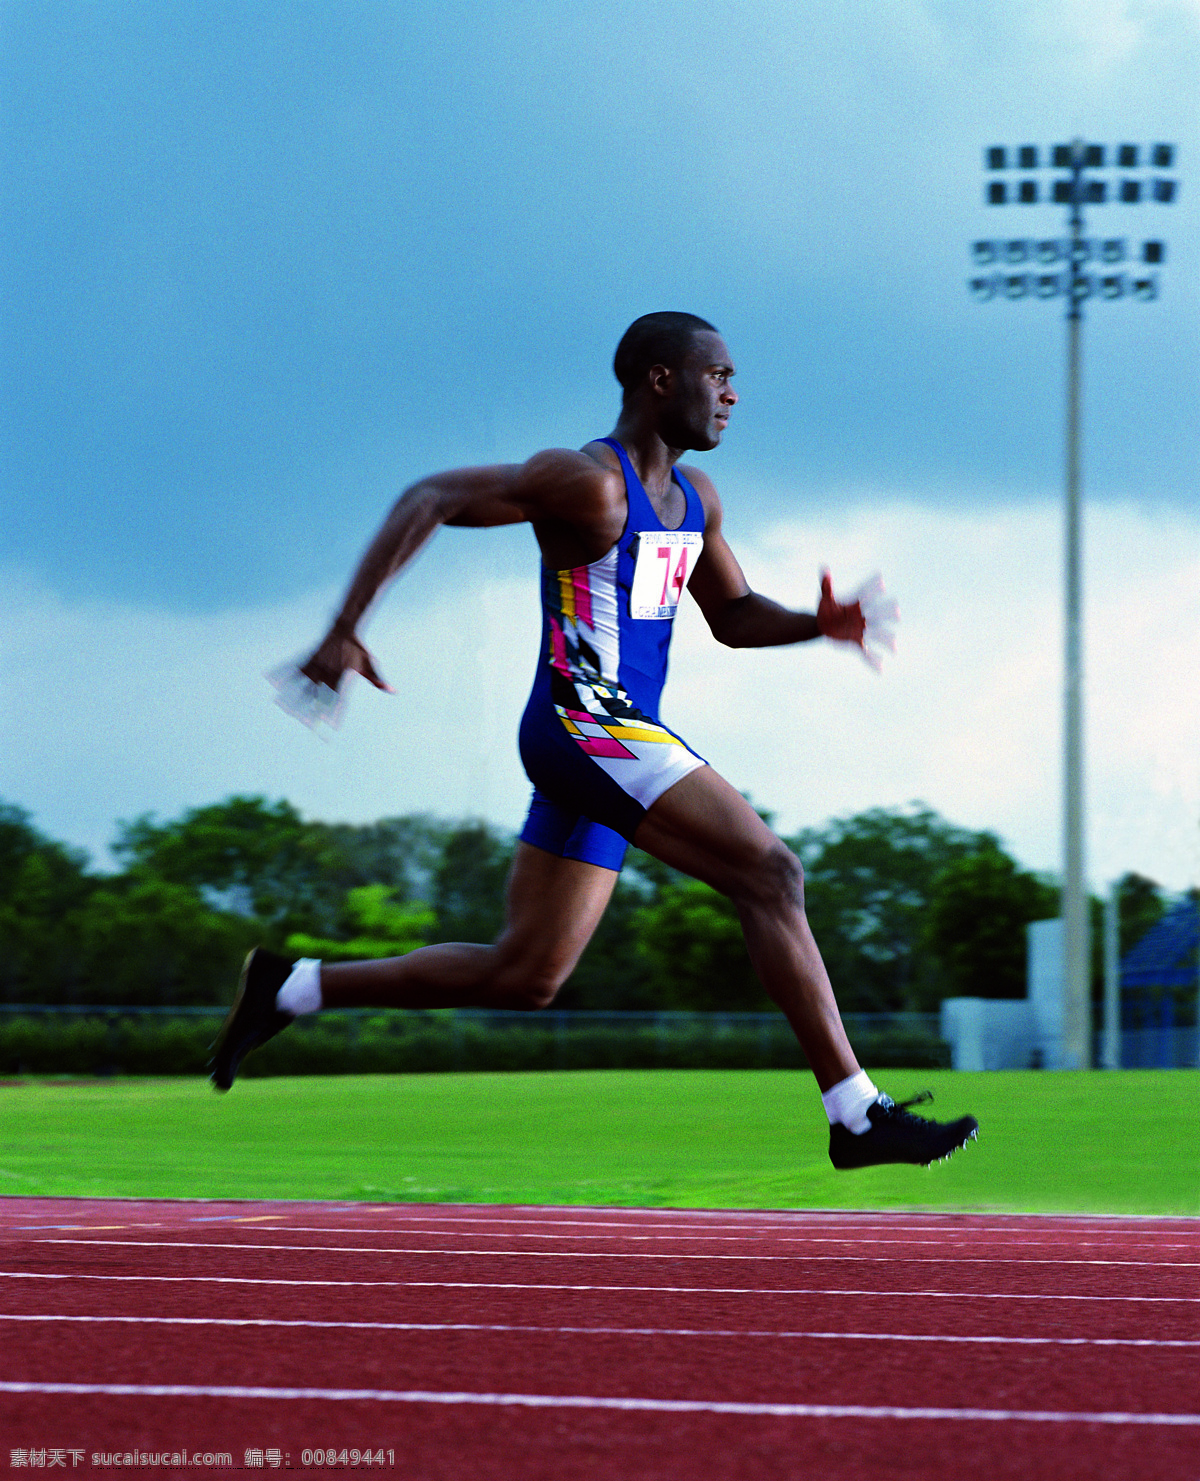 速度 田径 赛跑 百米 奥林匹克 文化艺术 体育运动 摄影图库